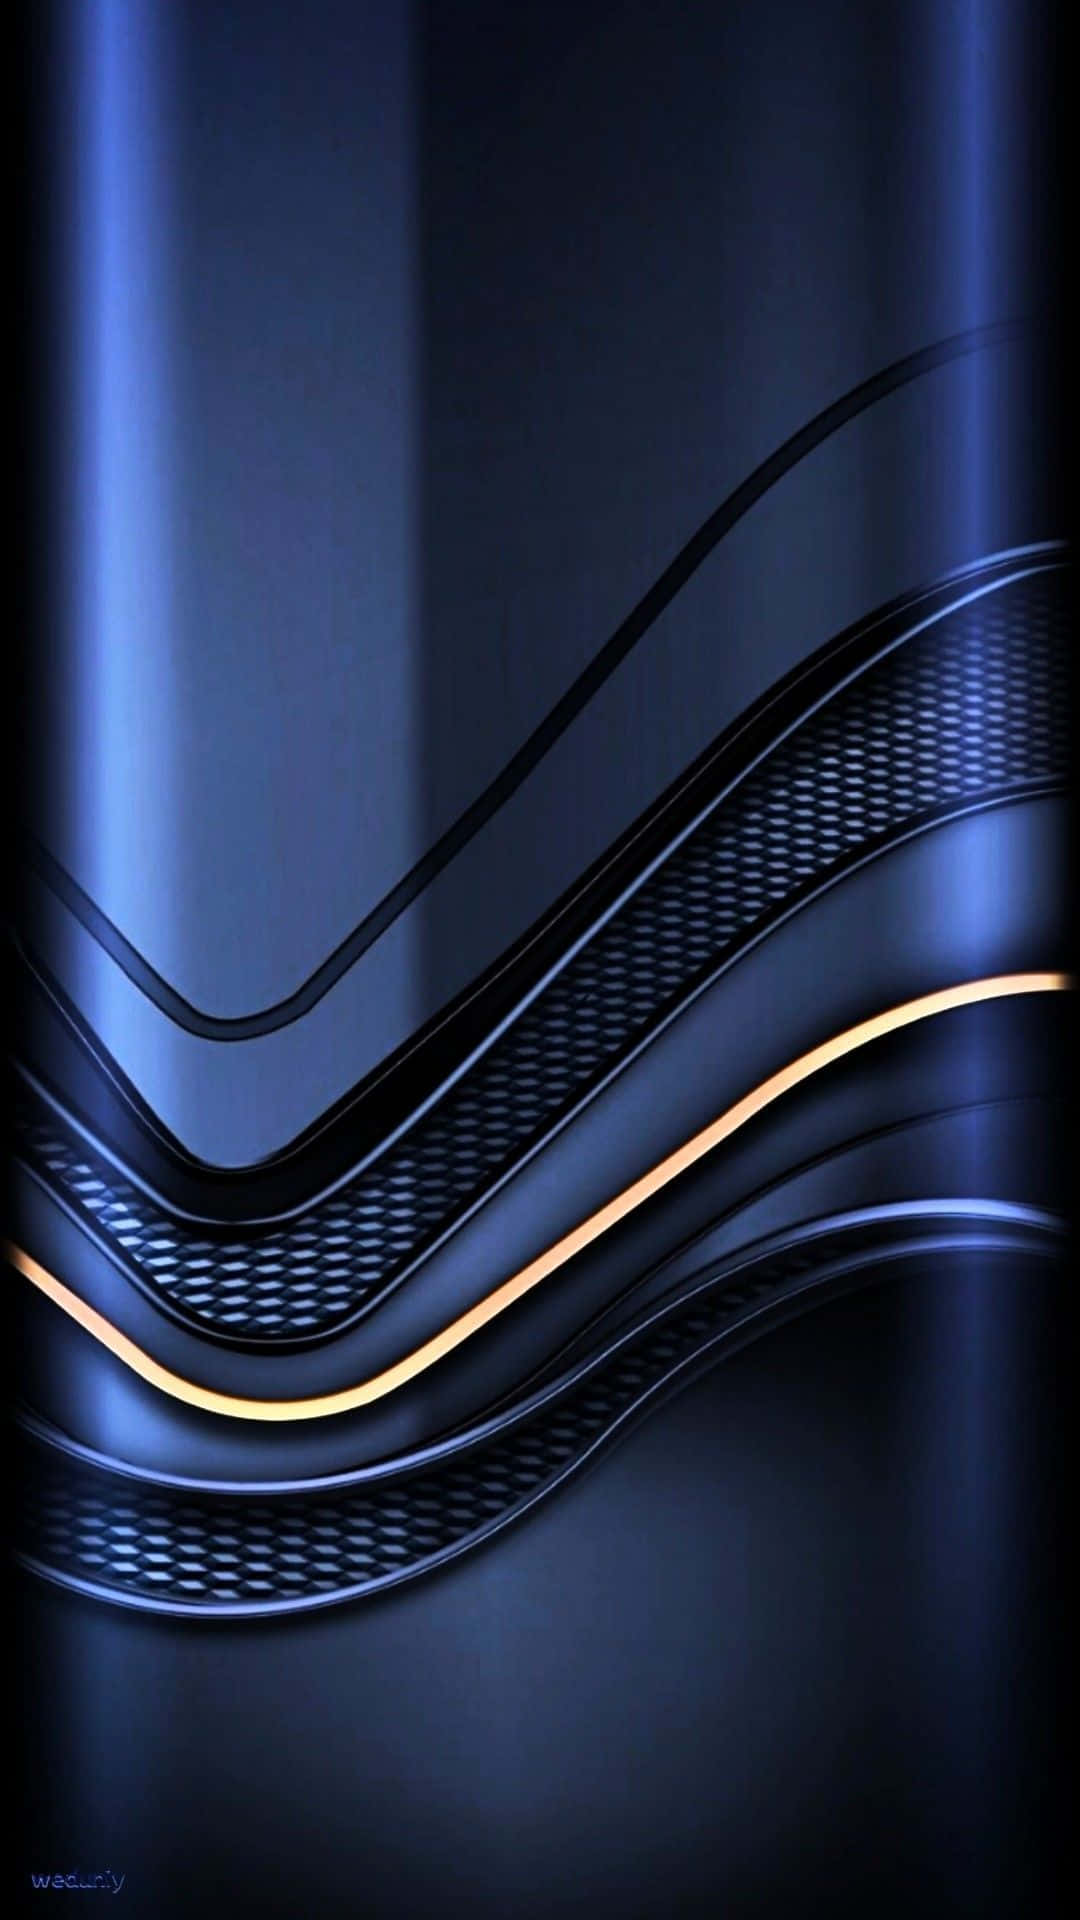 Líneadorada Con Curva Azul Lujosa. Fondo de pantalla